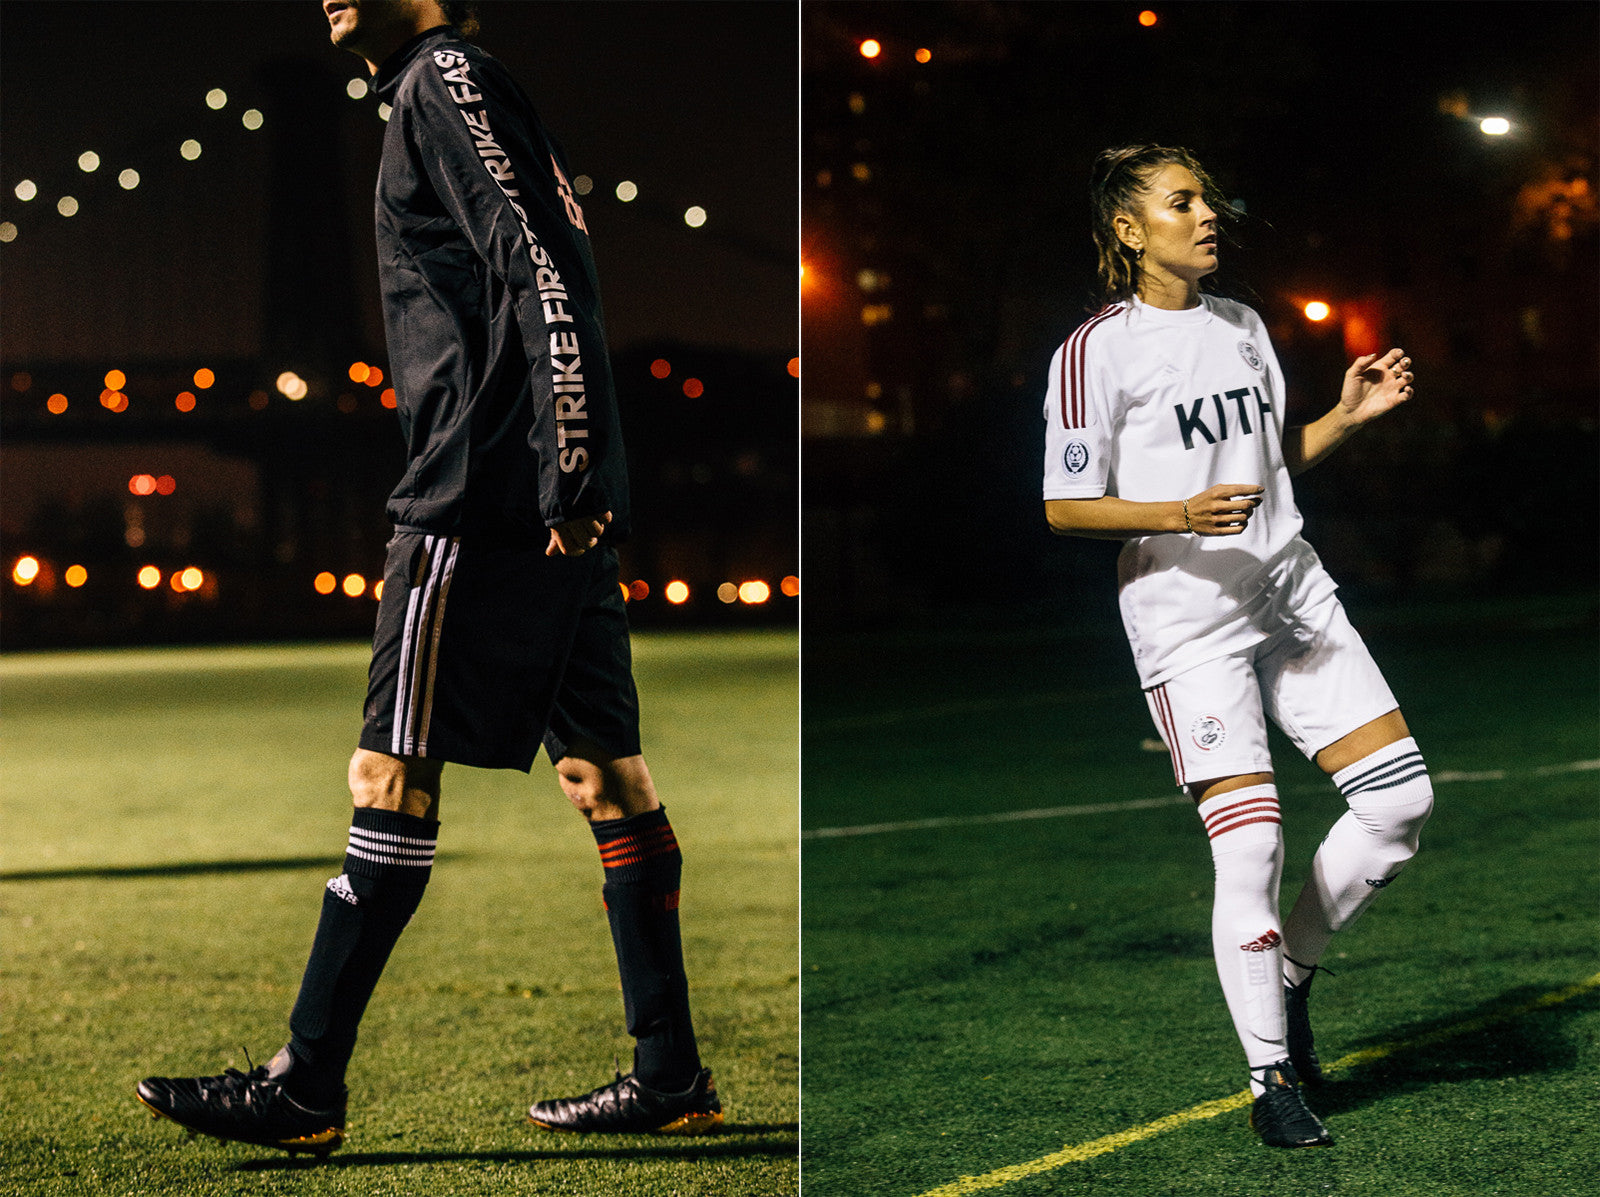 adidas kith soccer